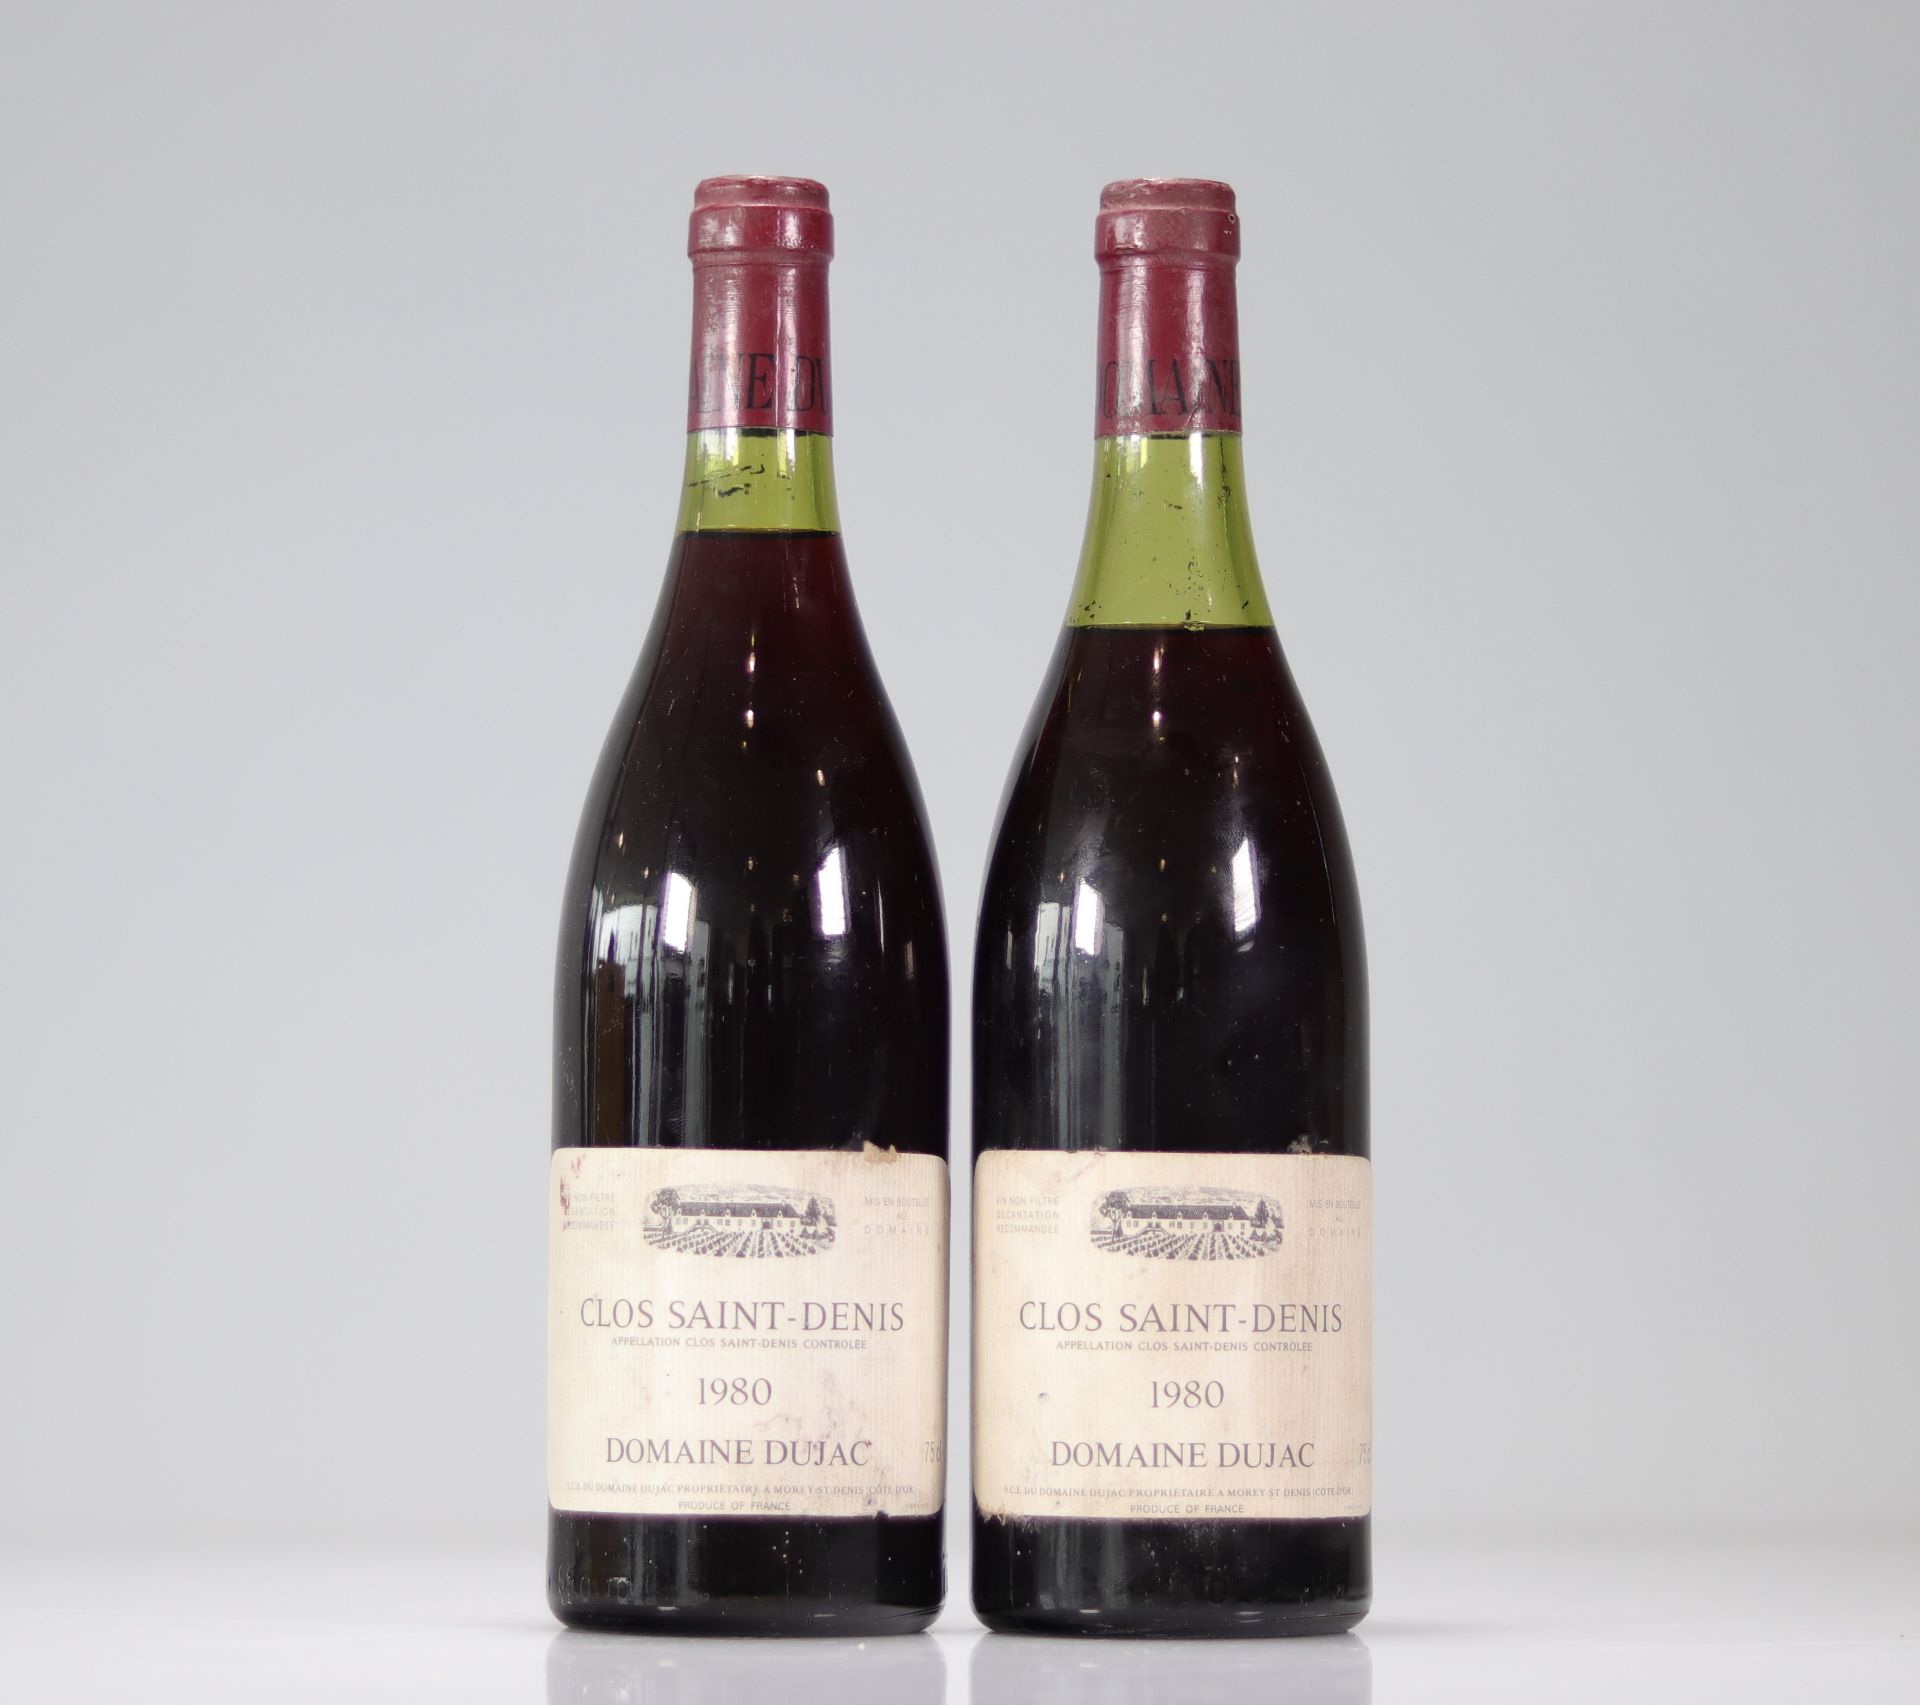 Clos Saint-Denis 2 bottles (Domaine Dujac) 1980